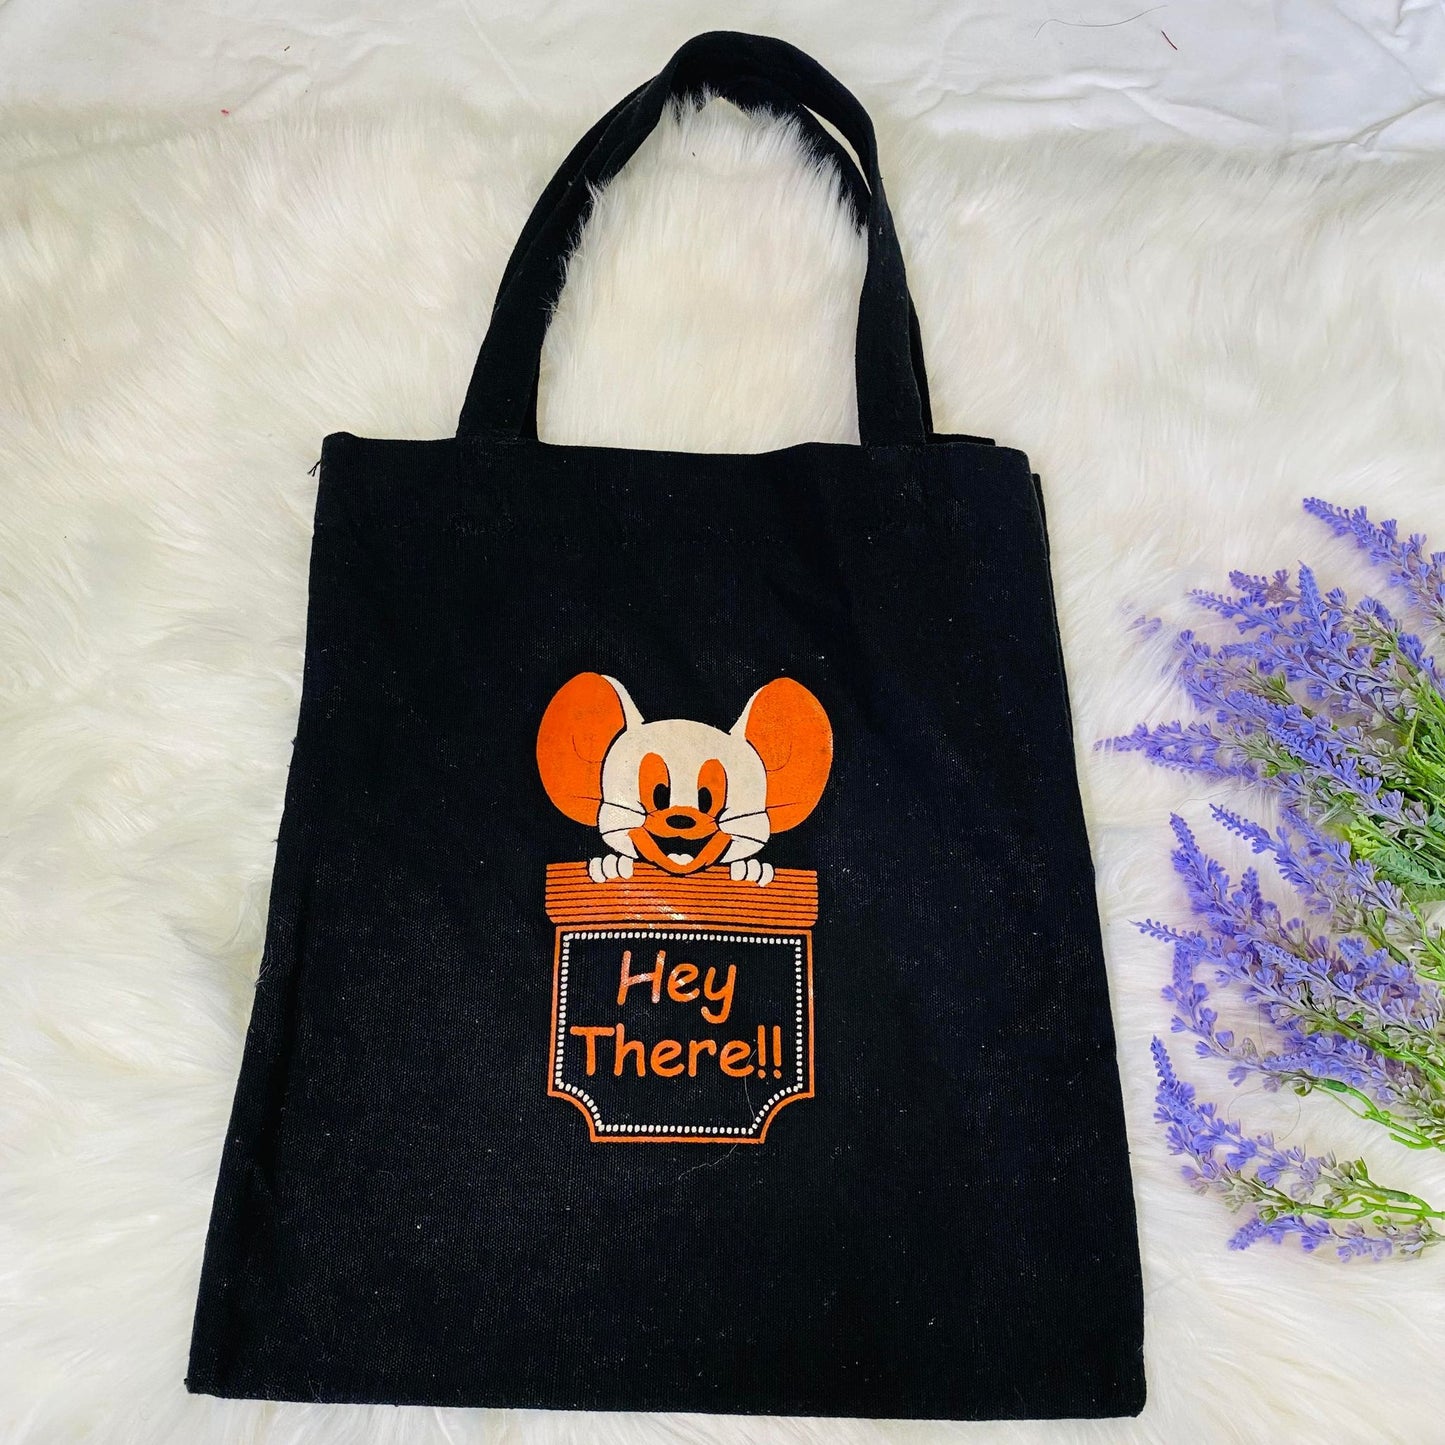 Cotton Tote Bag, Handmade Canvas tote Bag, Reusable Bag, Cute Tote Bag, Cat and Panda Print Bag, Vegan Tote Bag, Gift For Her